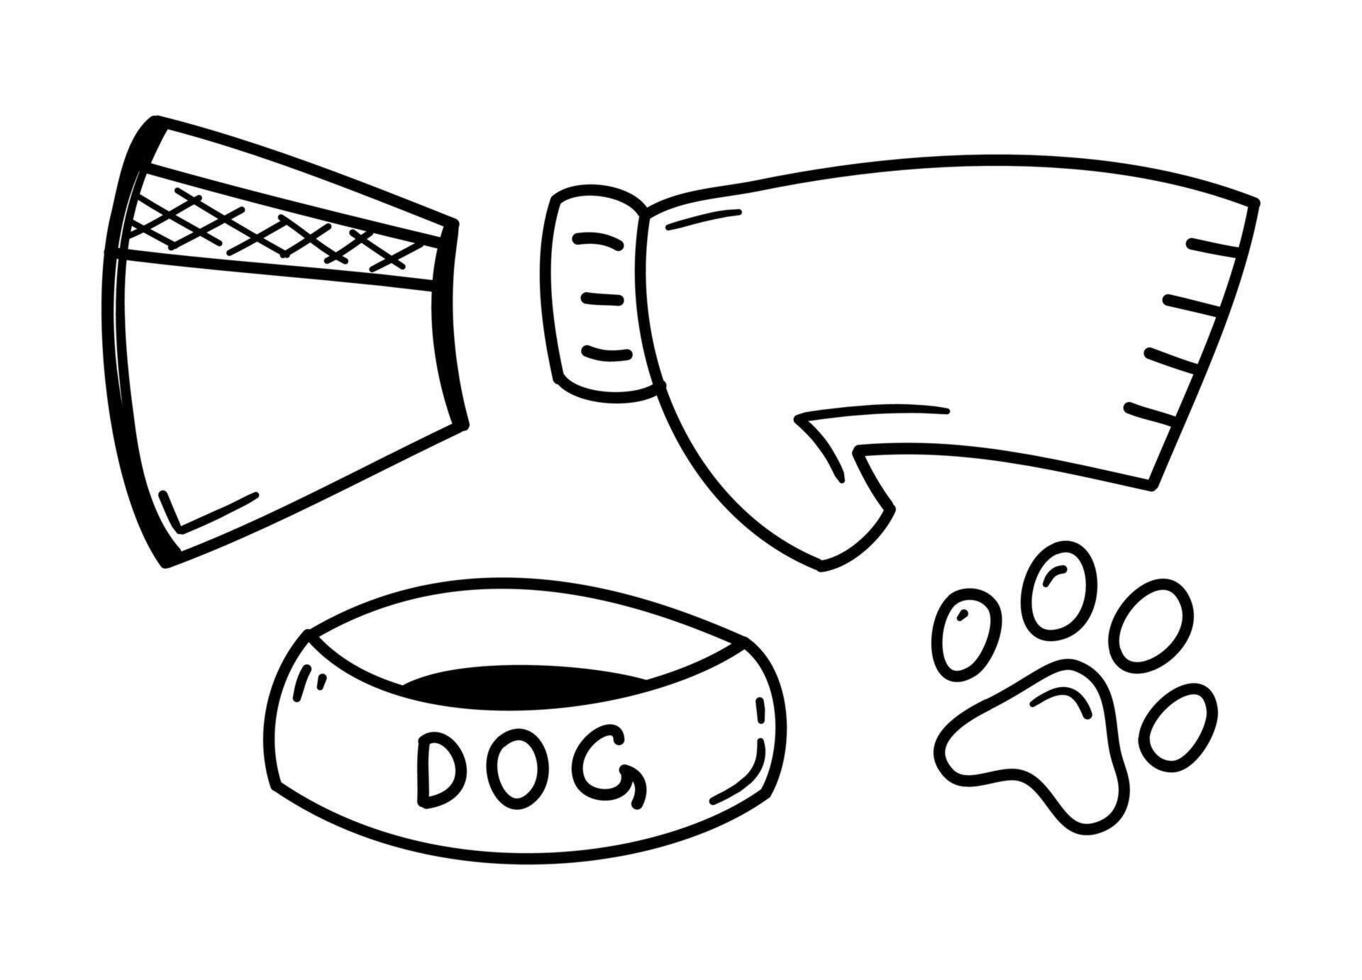 klotter sällskapsdjur Tillbehör. hand dragen element för hund, sällskapsdjur, valp. vektor ikoner för veterinär butiker, klinik, grooming salong eller sällskapsdjur omtänksam